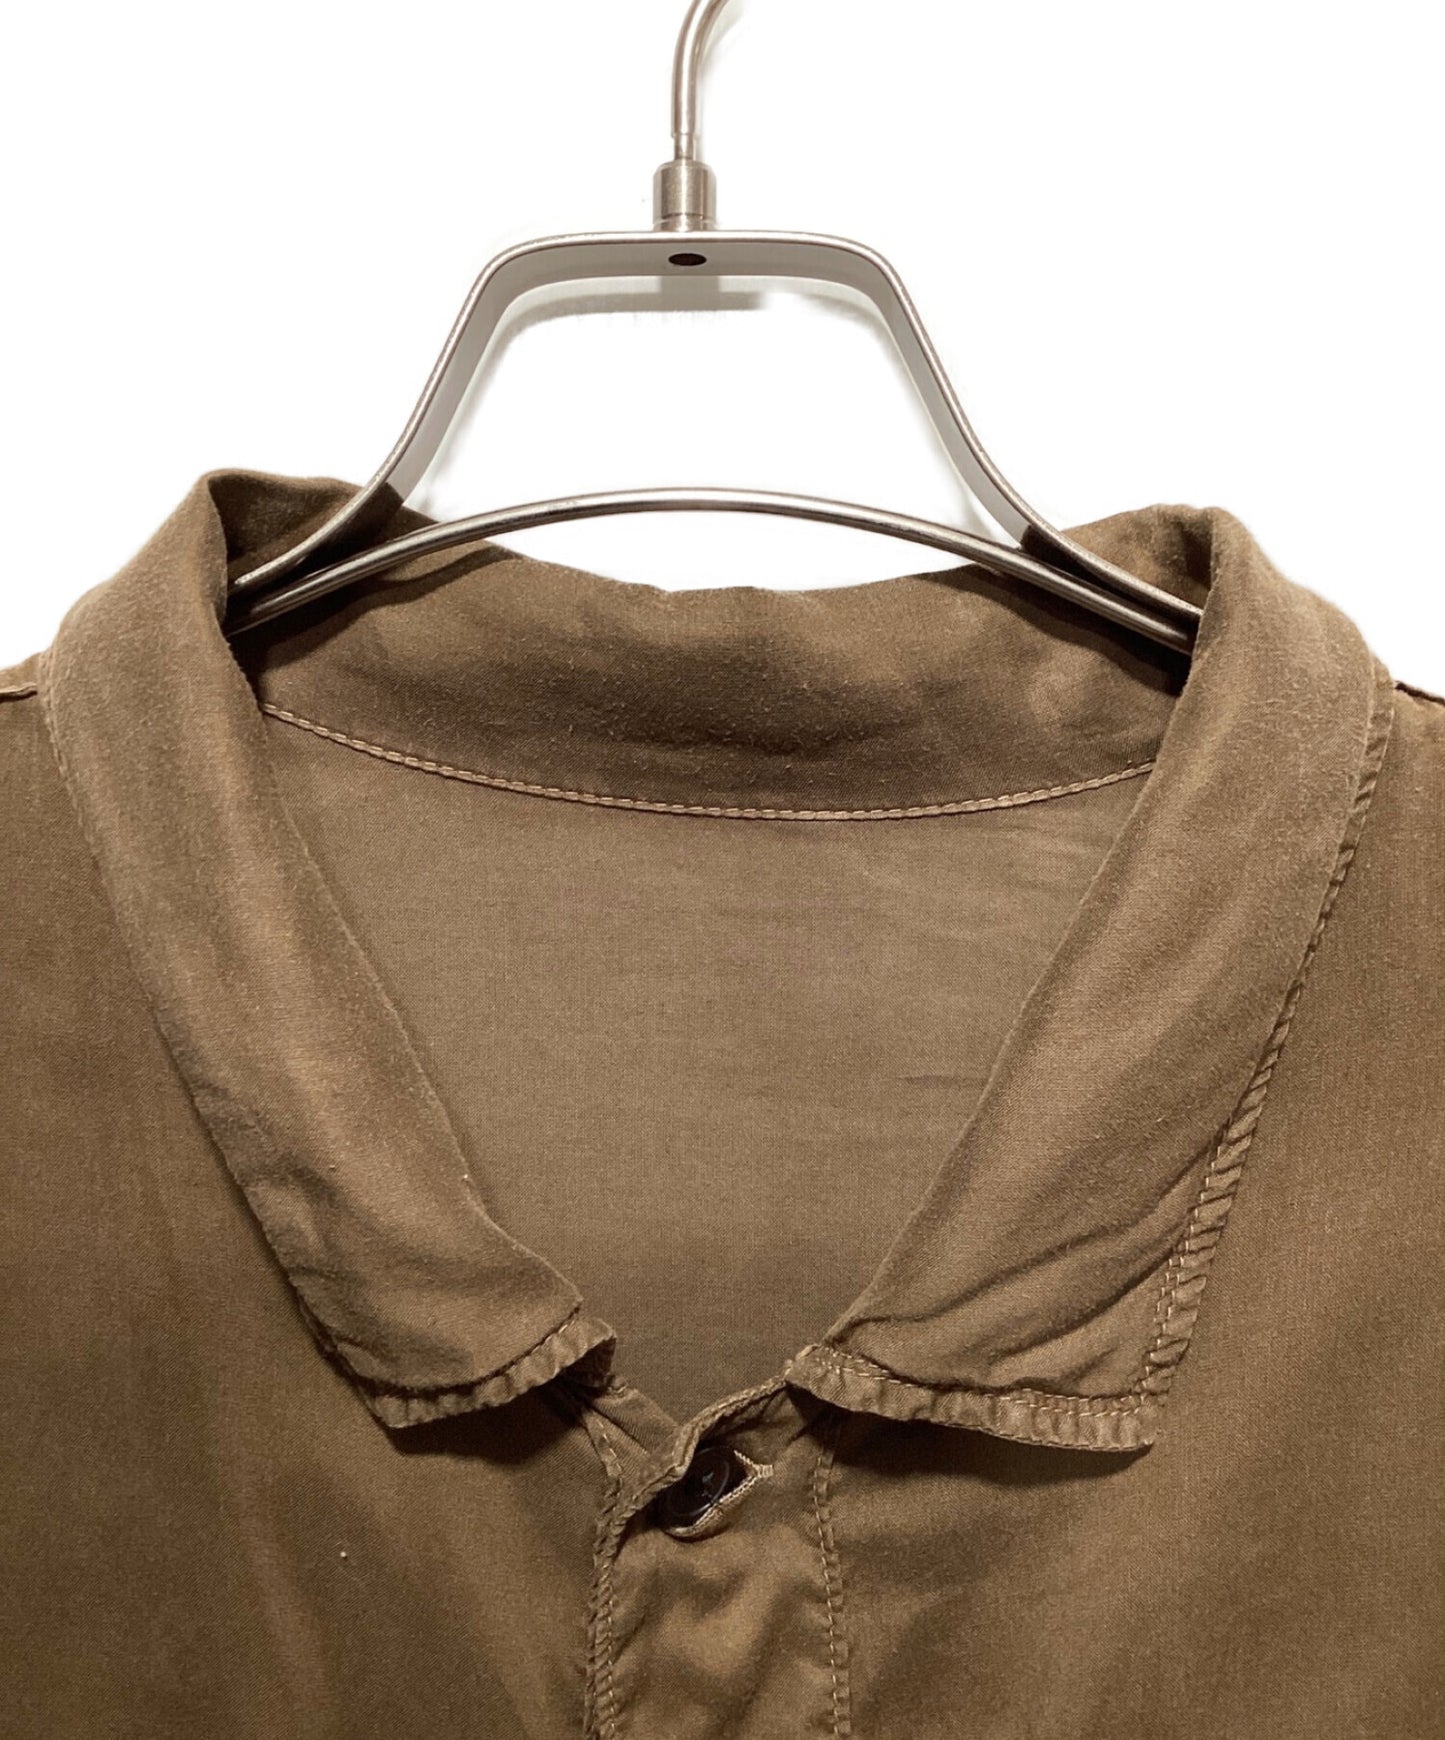 Yohji Yamamoto Pour Homme เซลลูโลสเสื้อผ้าย้อมสนามหญ้าเปิดปลอกคอเสื้อ HX-B08-200